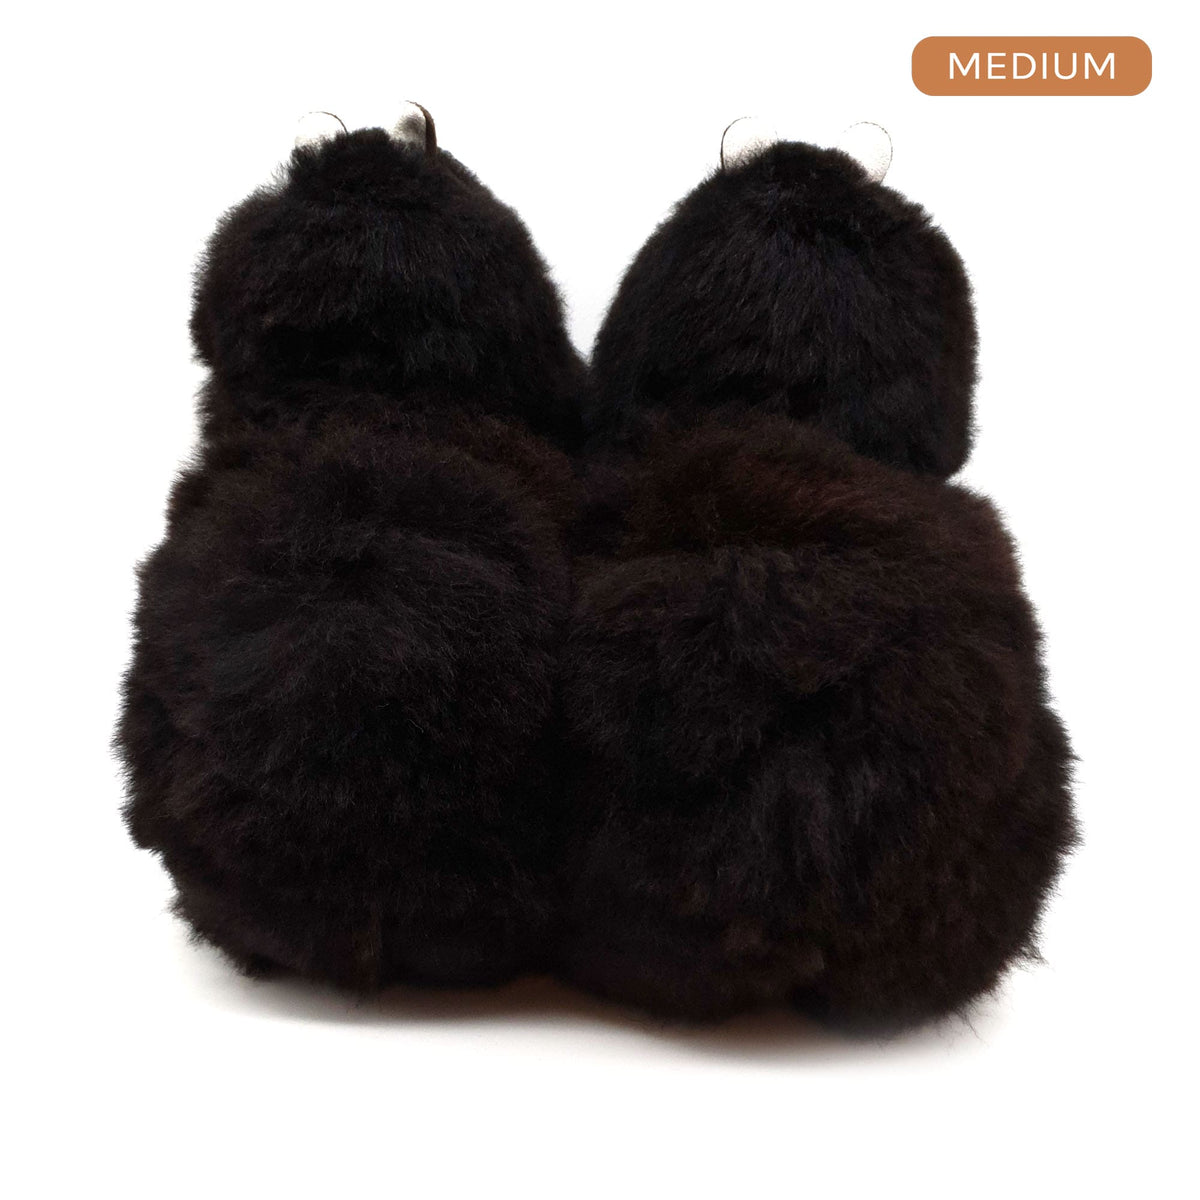 Black Panther – mittelgroßes Alpaka-Spielzeug (32 cm) – limitierte Auflage